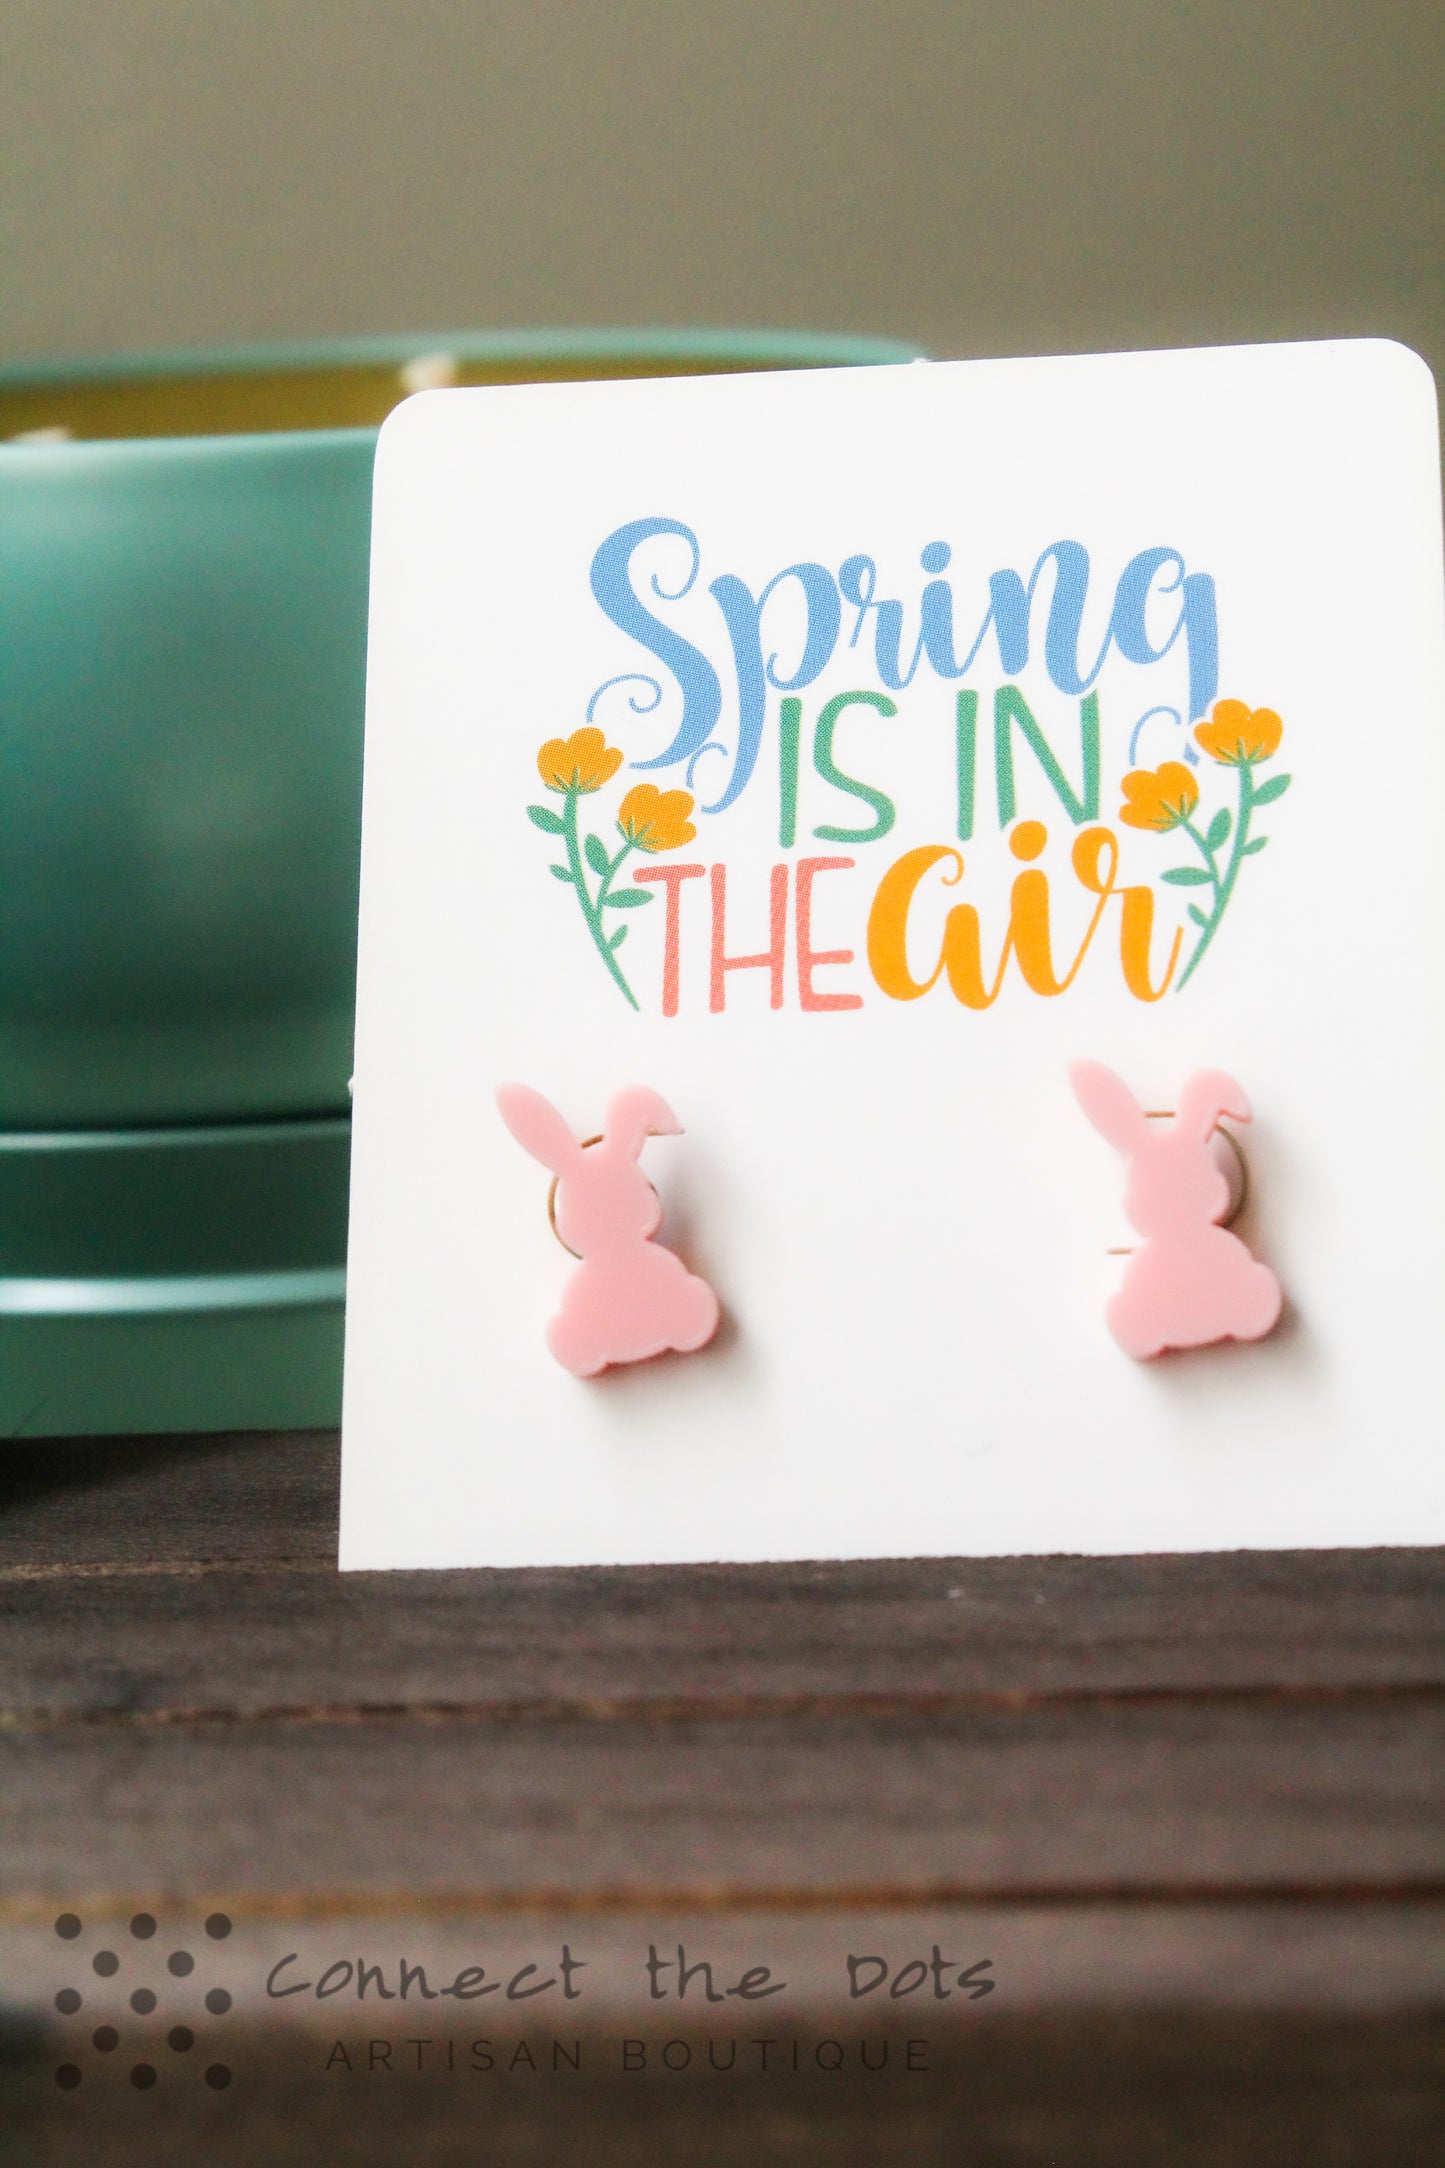 Easter/Spring Stud Earrings